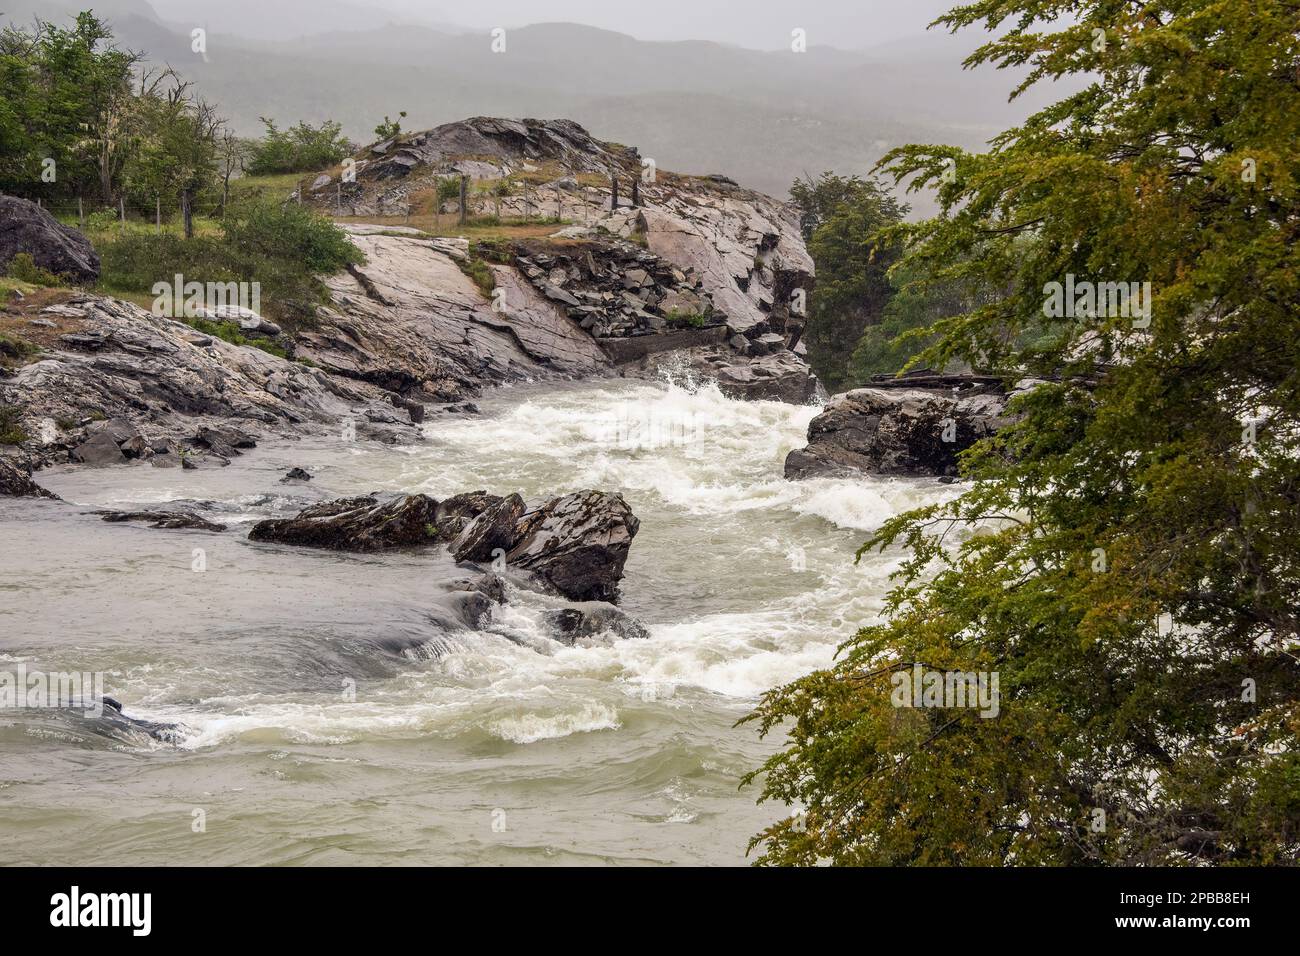 Rio del Salto rapids on a rainy day, Carretera Austral, Patagonia, Chile Stock Photo